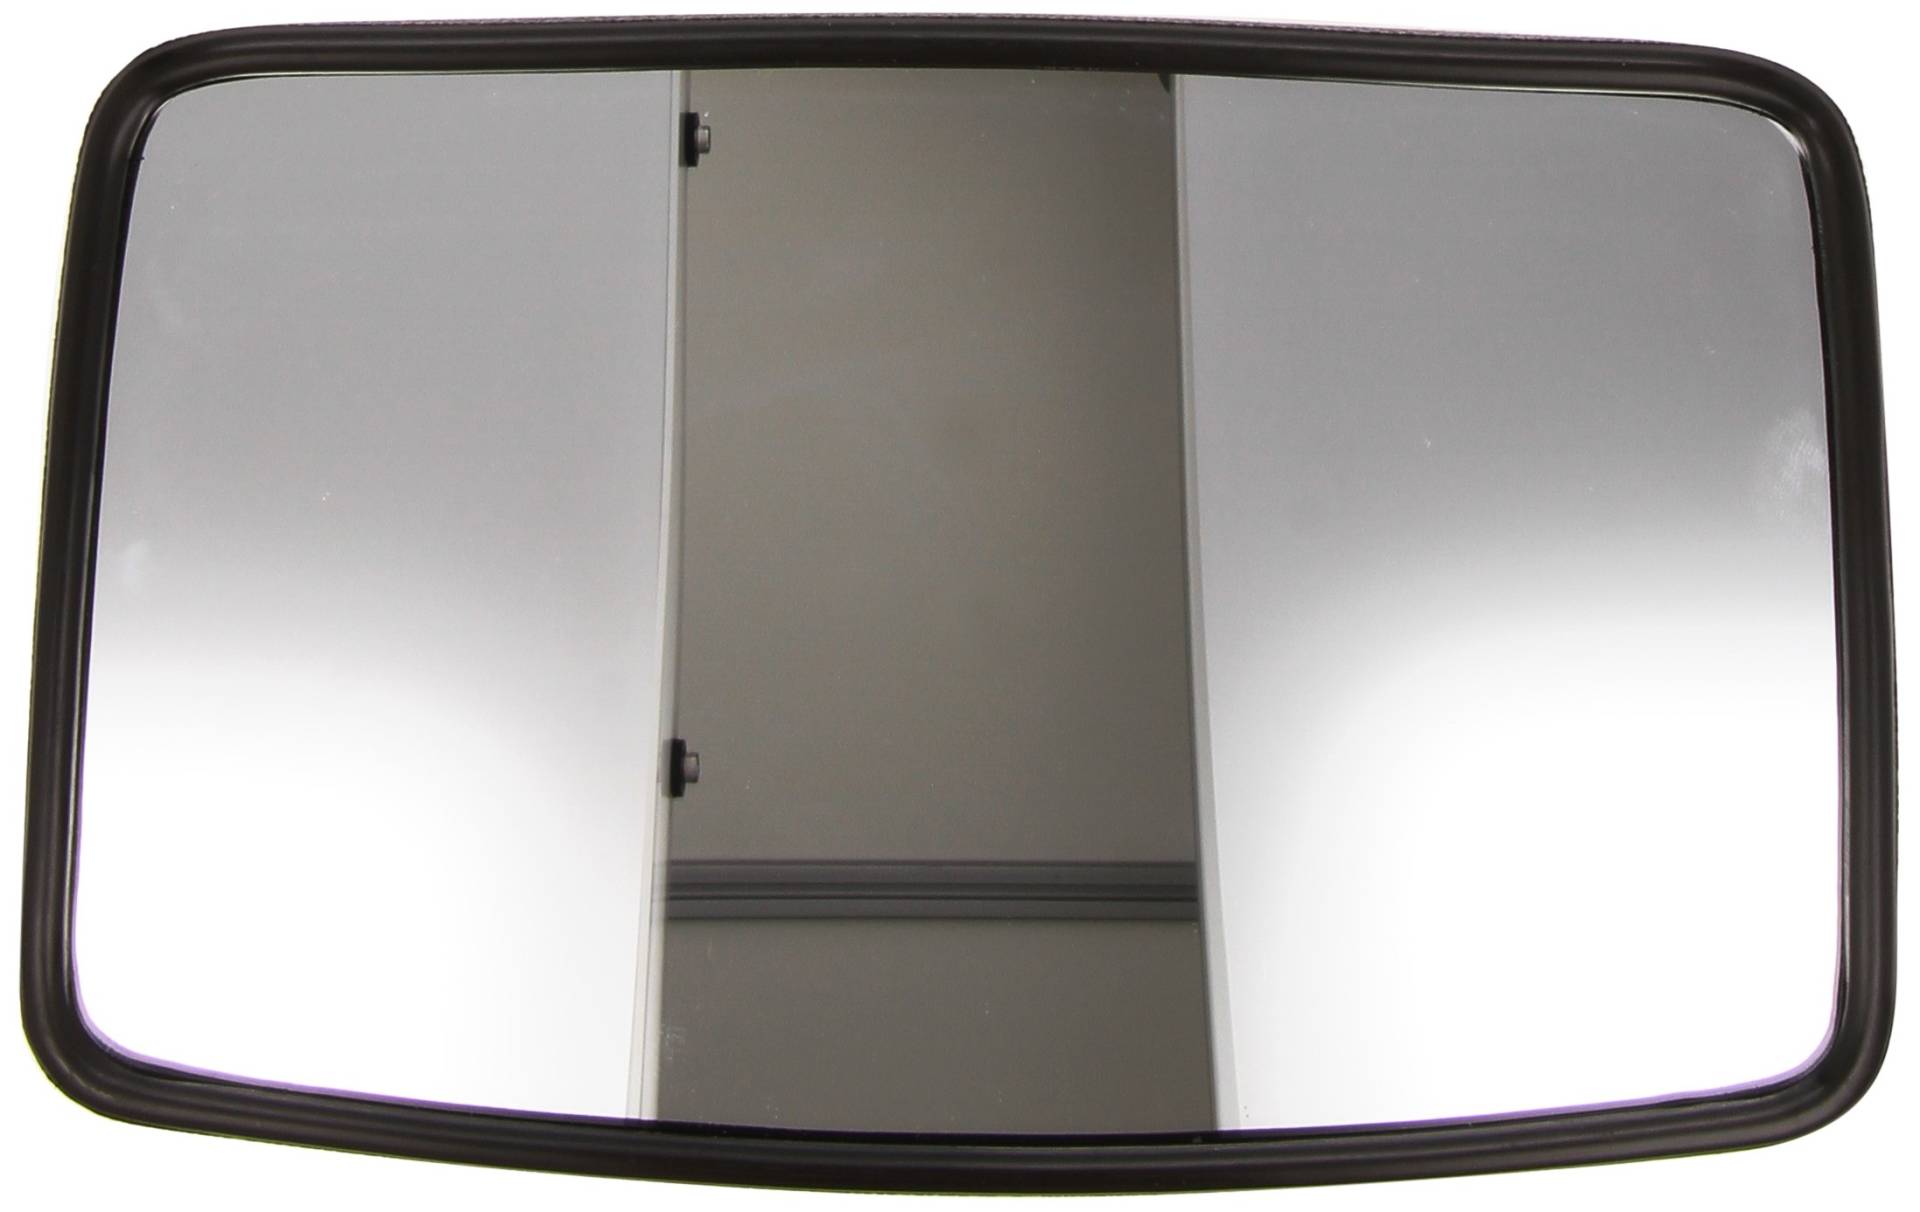 HELLA - Außenspiegel - Kunststoffgehäuse - schwarz - Breite: 157mm - Höhe: 244mm - beidseitig - 8SB 004 288-092 von Hella